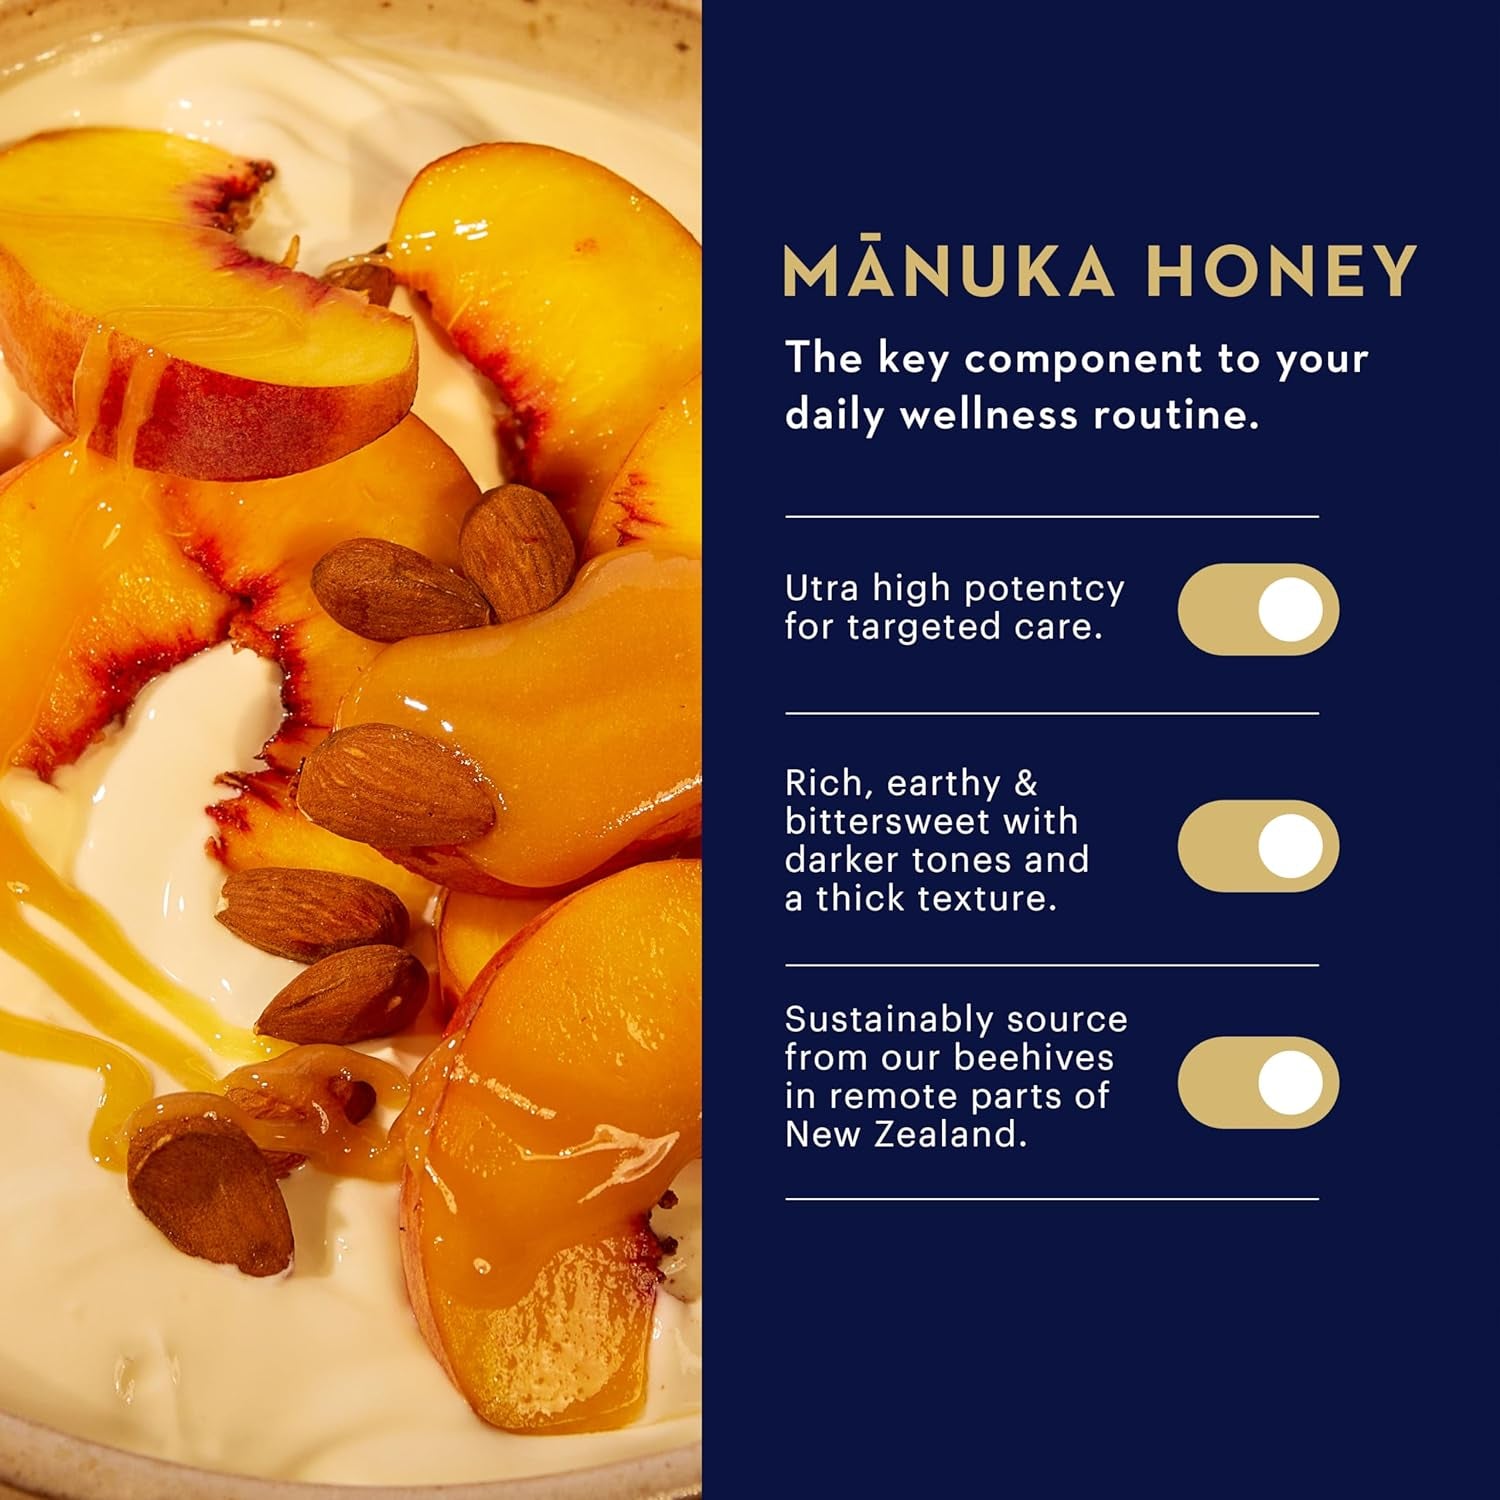 Manuka Health UMF 13+/MGO 400+ Manuka Honey (500G/17.6Oz), Superfood, Authentic Raw Honey from New Zealand